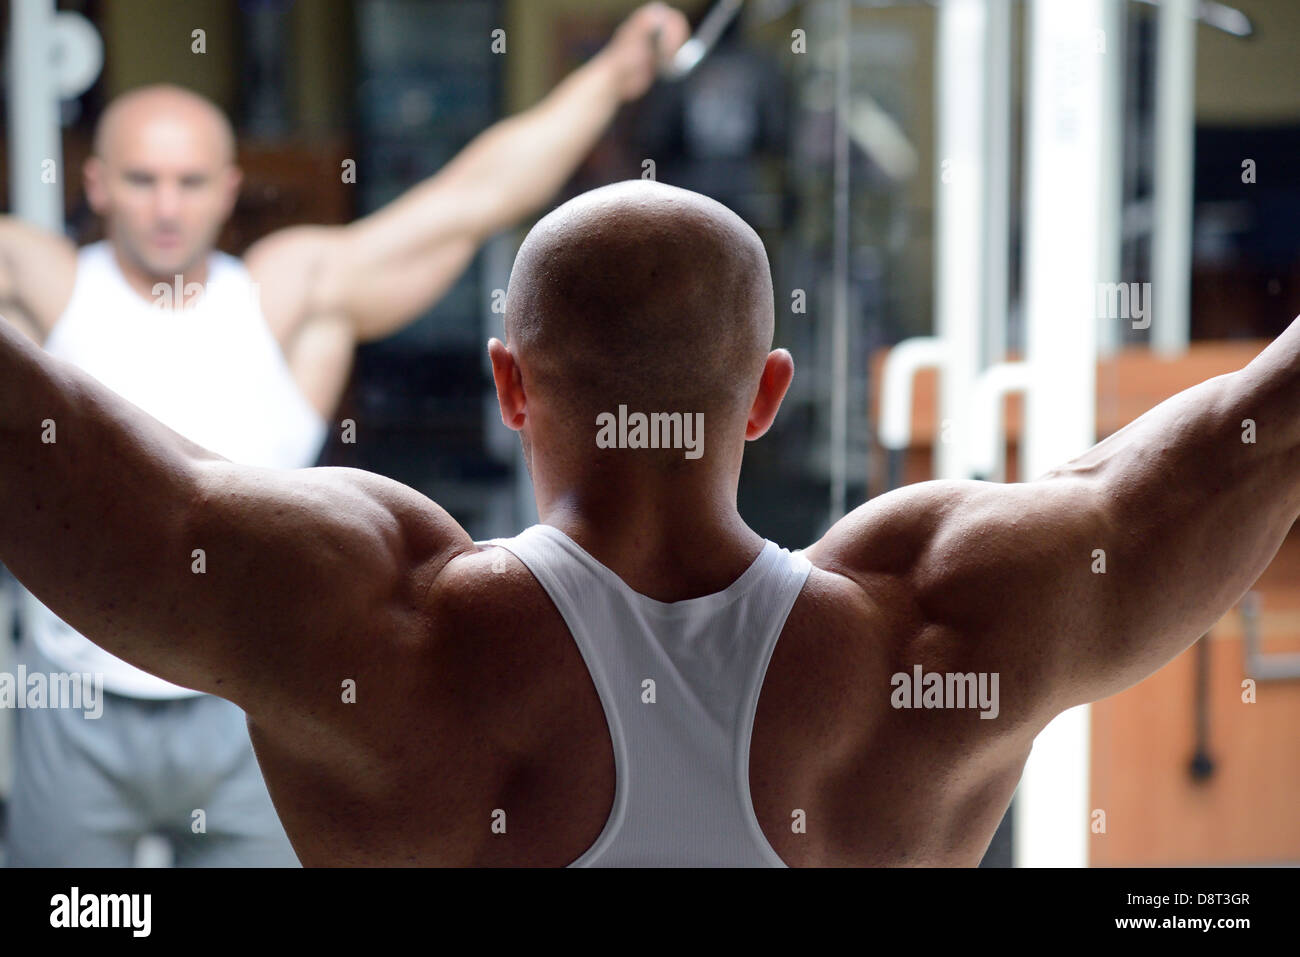 bodybuilder in gym Stock Photo